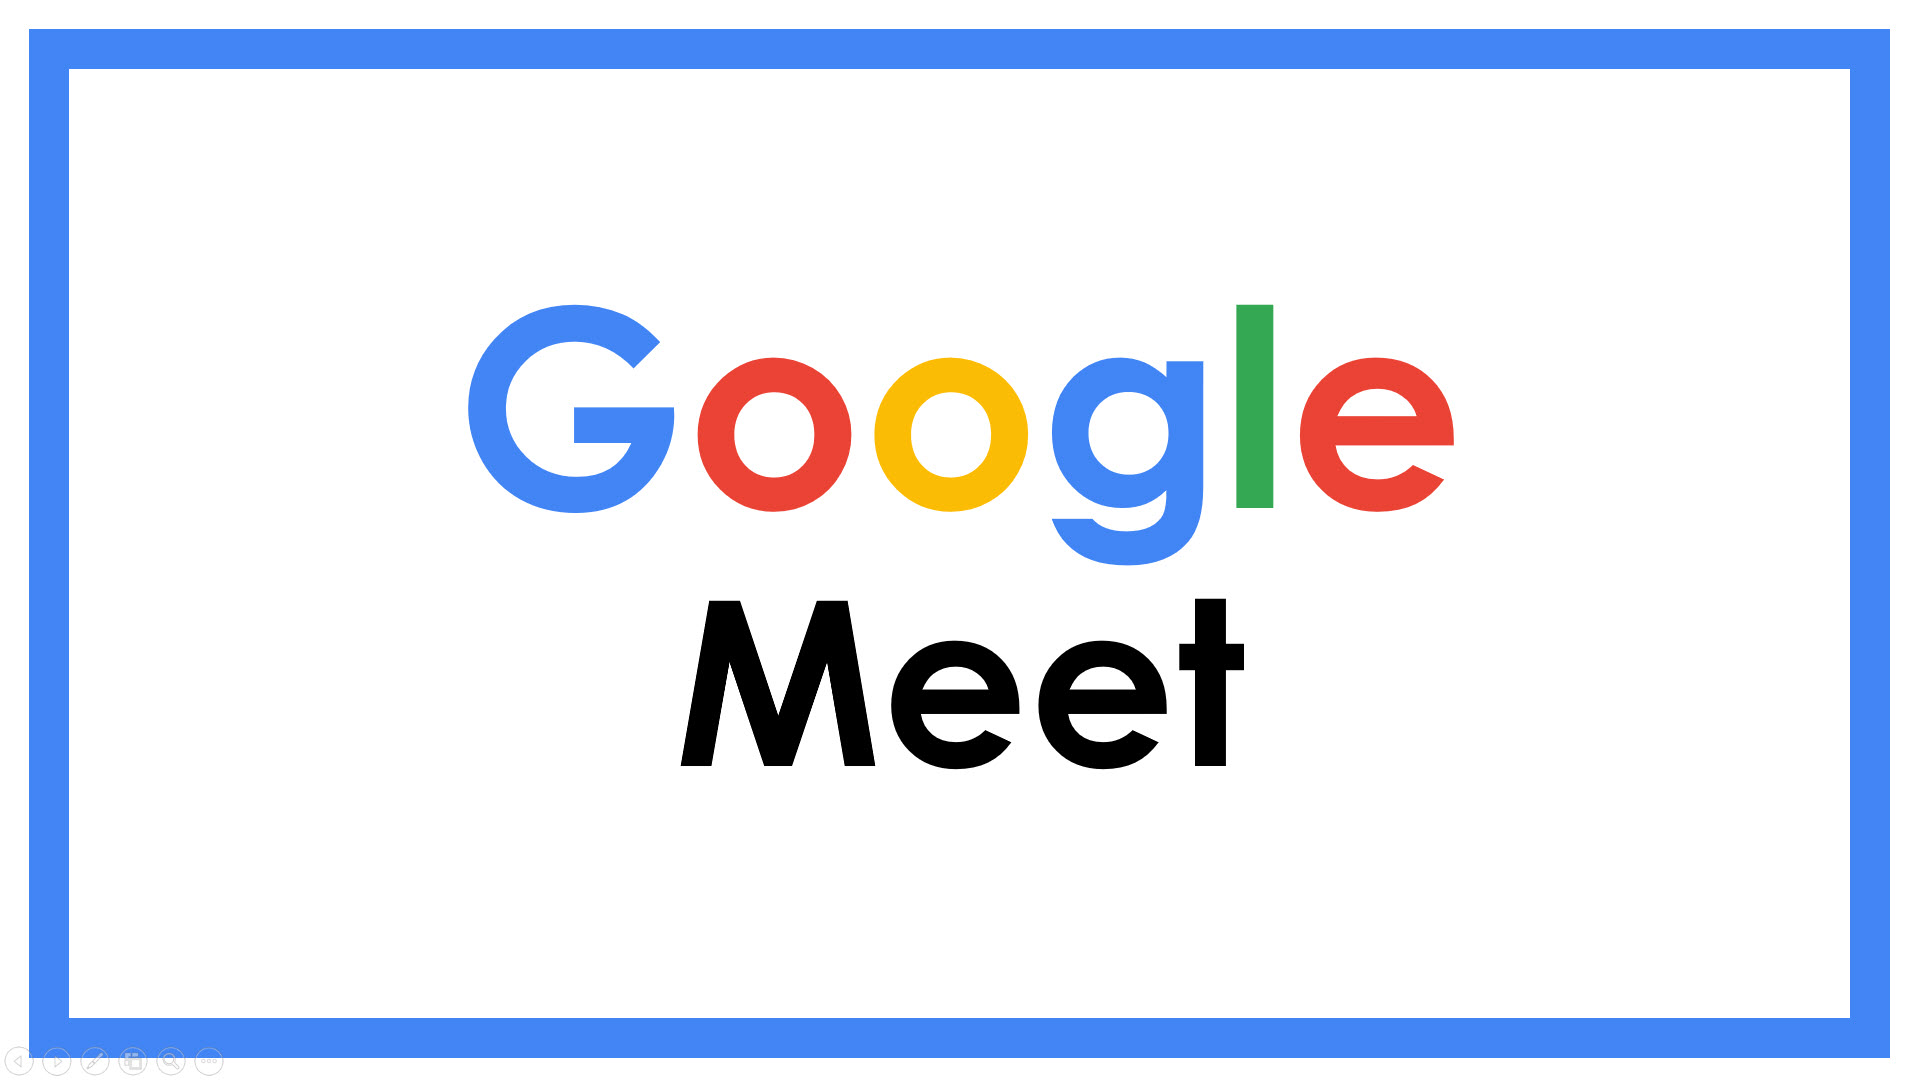 Google Meet